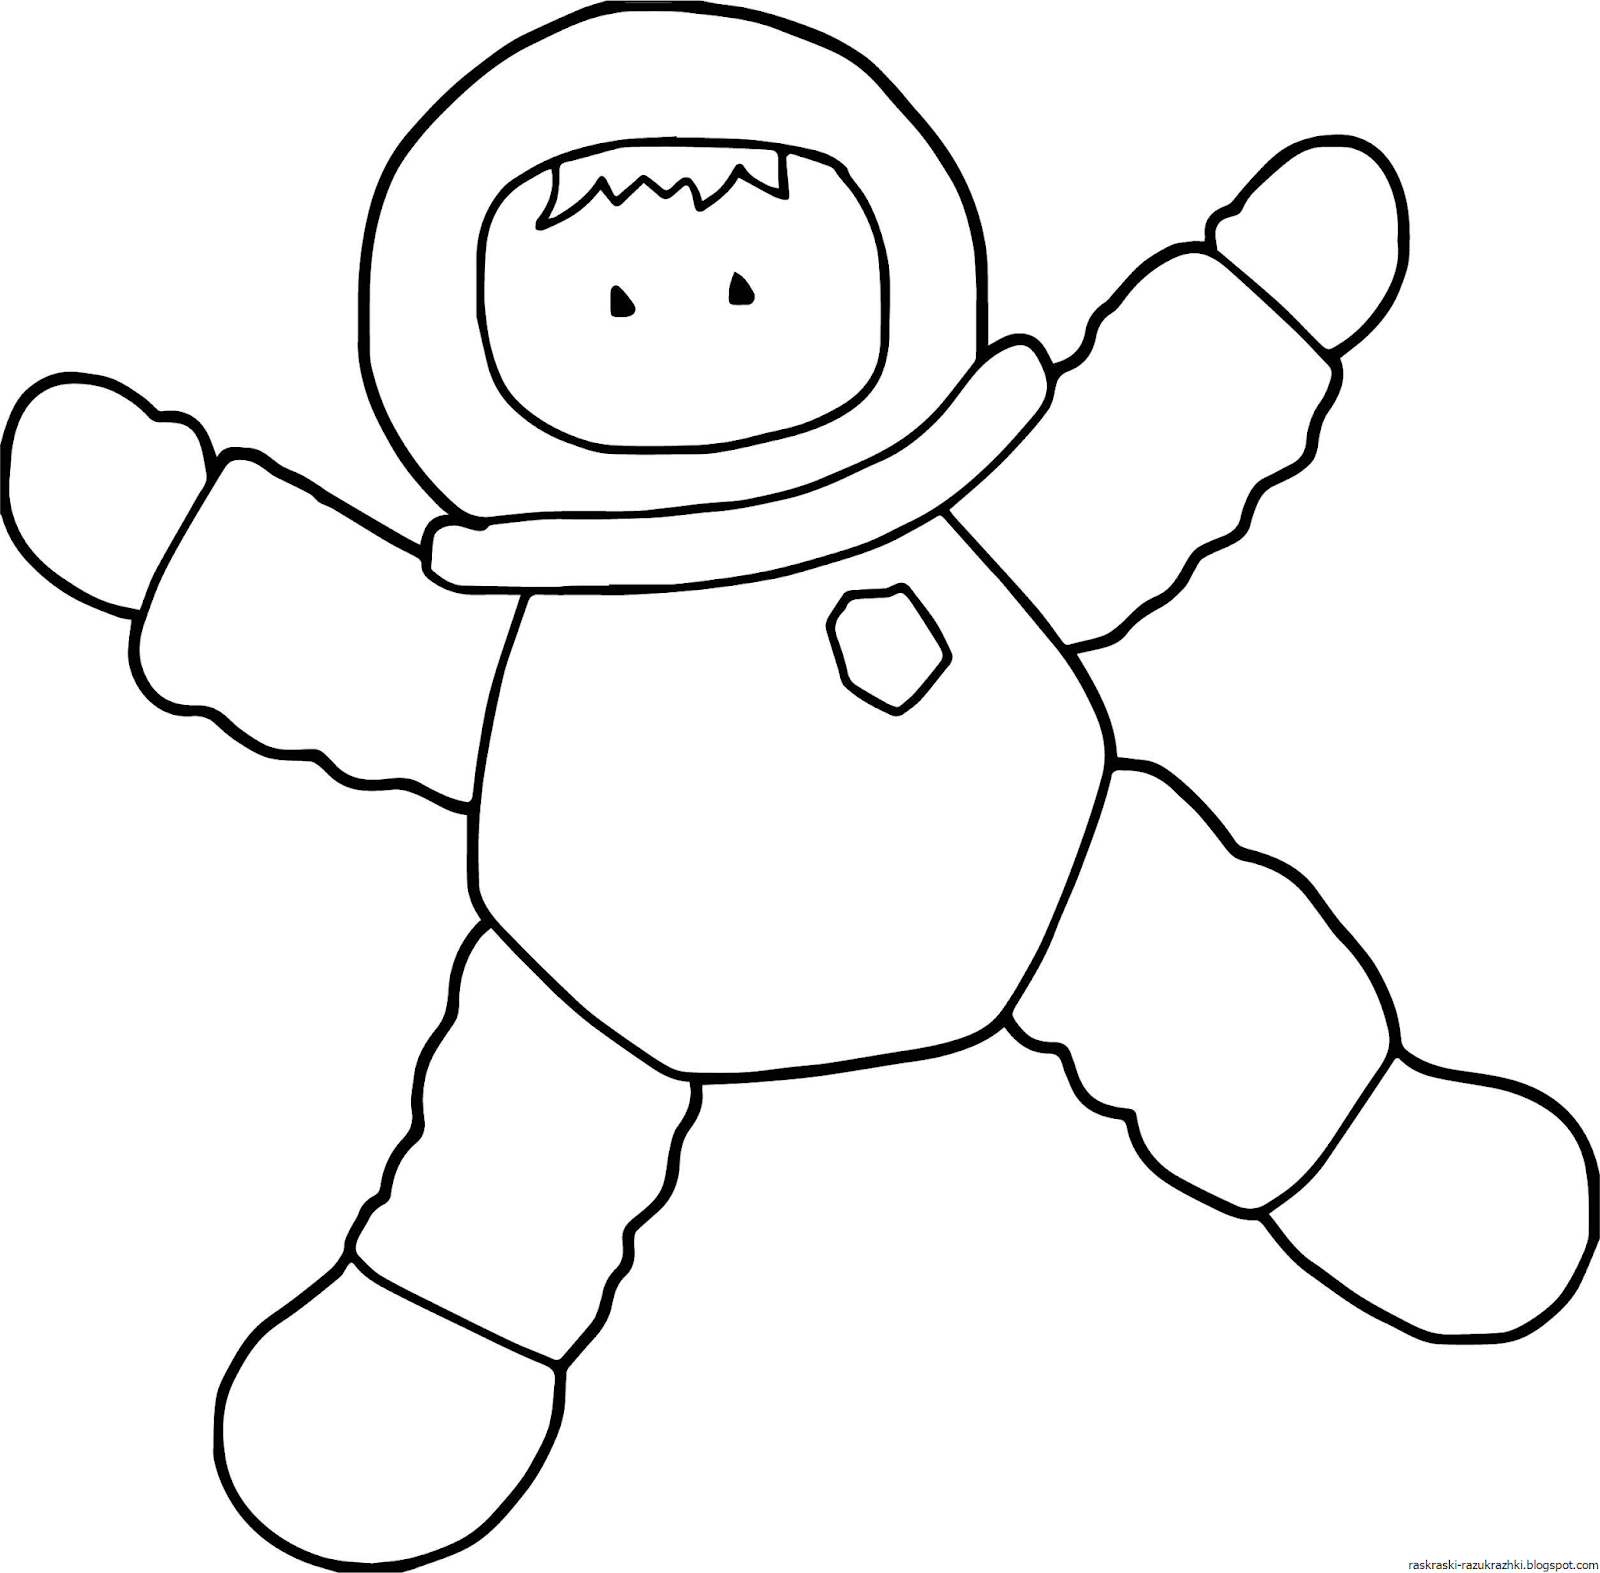 Шаблон космонавта для поделки ко дню космонавтики. Космонавт раскраска для детей. Космонавт трафарет для детей. Космонавт картинка для детей раскраска. Космонавт раскраска для малышей.